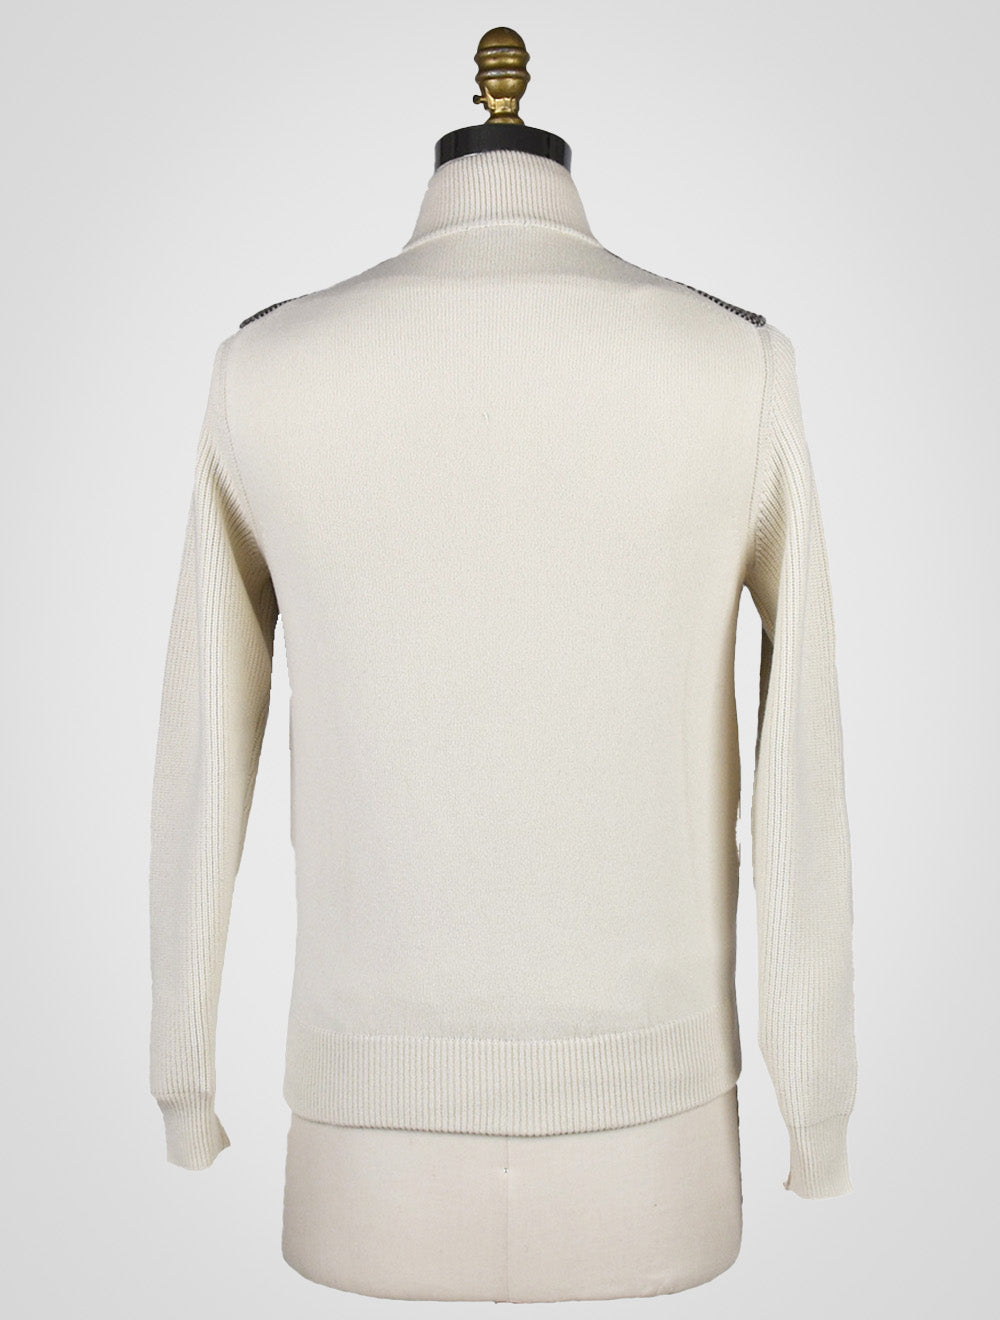 Cesare attolini bílý hnědý kašmírový svetr plný zip